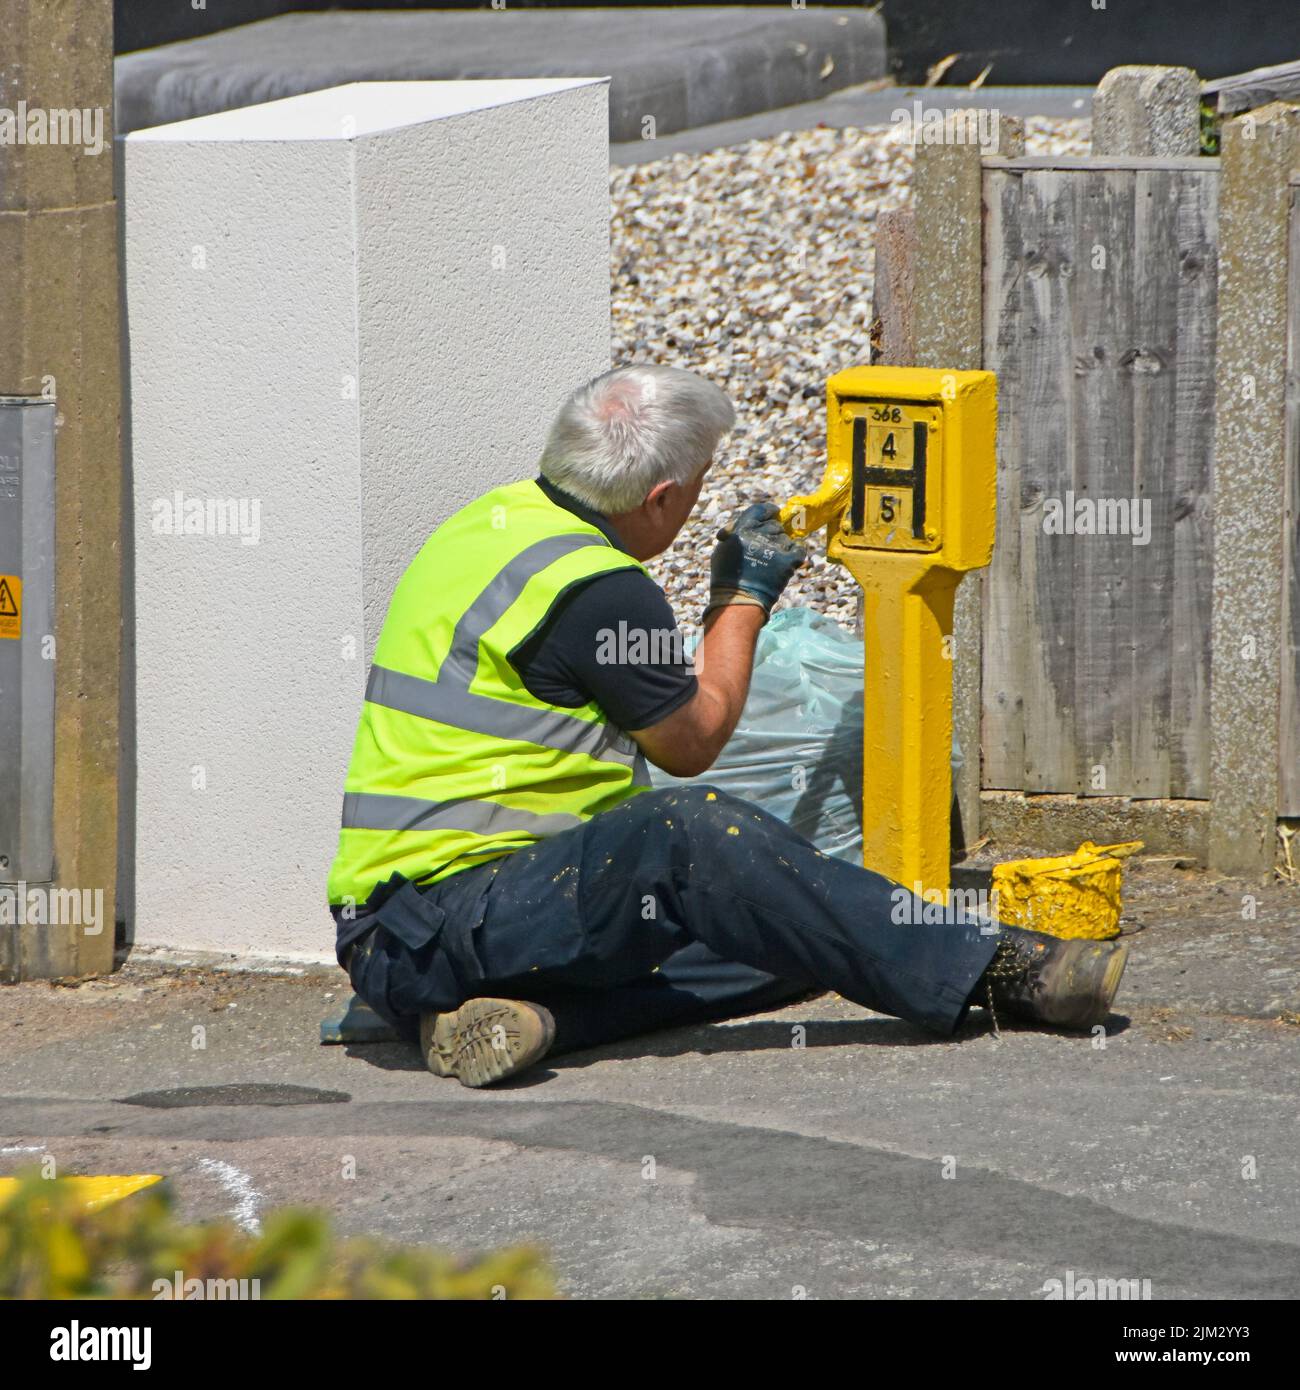 Workman di Essex Fire and Rescue Service seduto su un pavimento con vernice vaso pittura giallo strada idrante segno indossare giacca ad alta visibilità UK Foto Stock